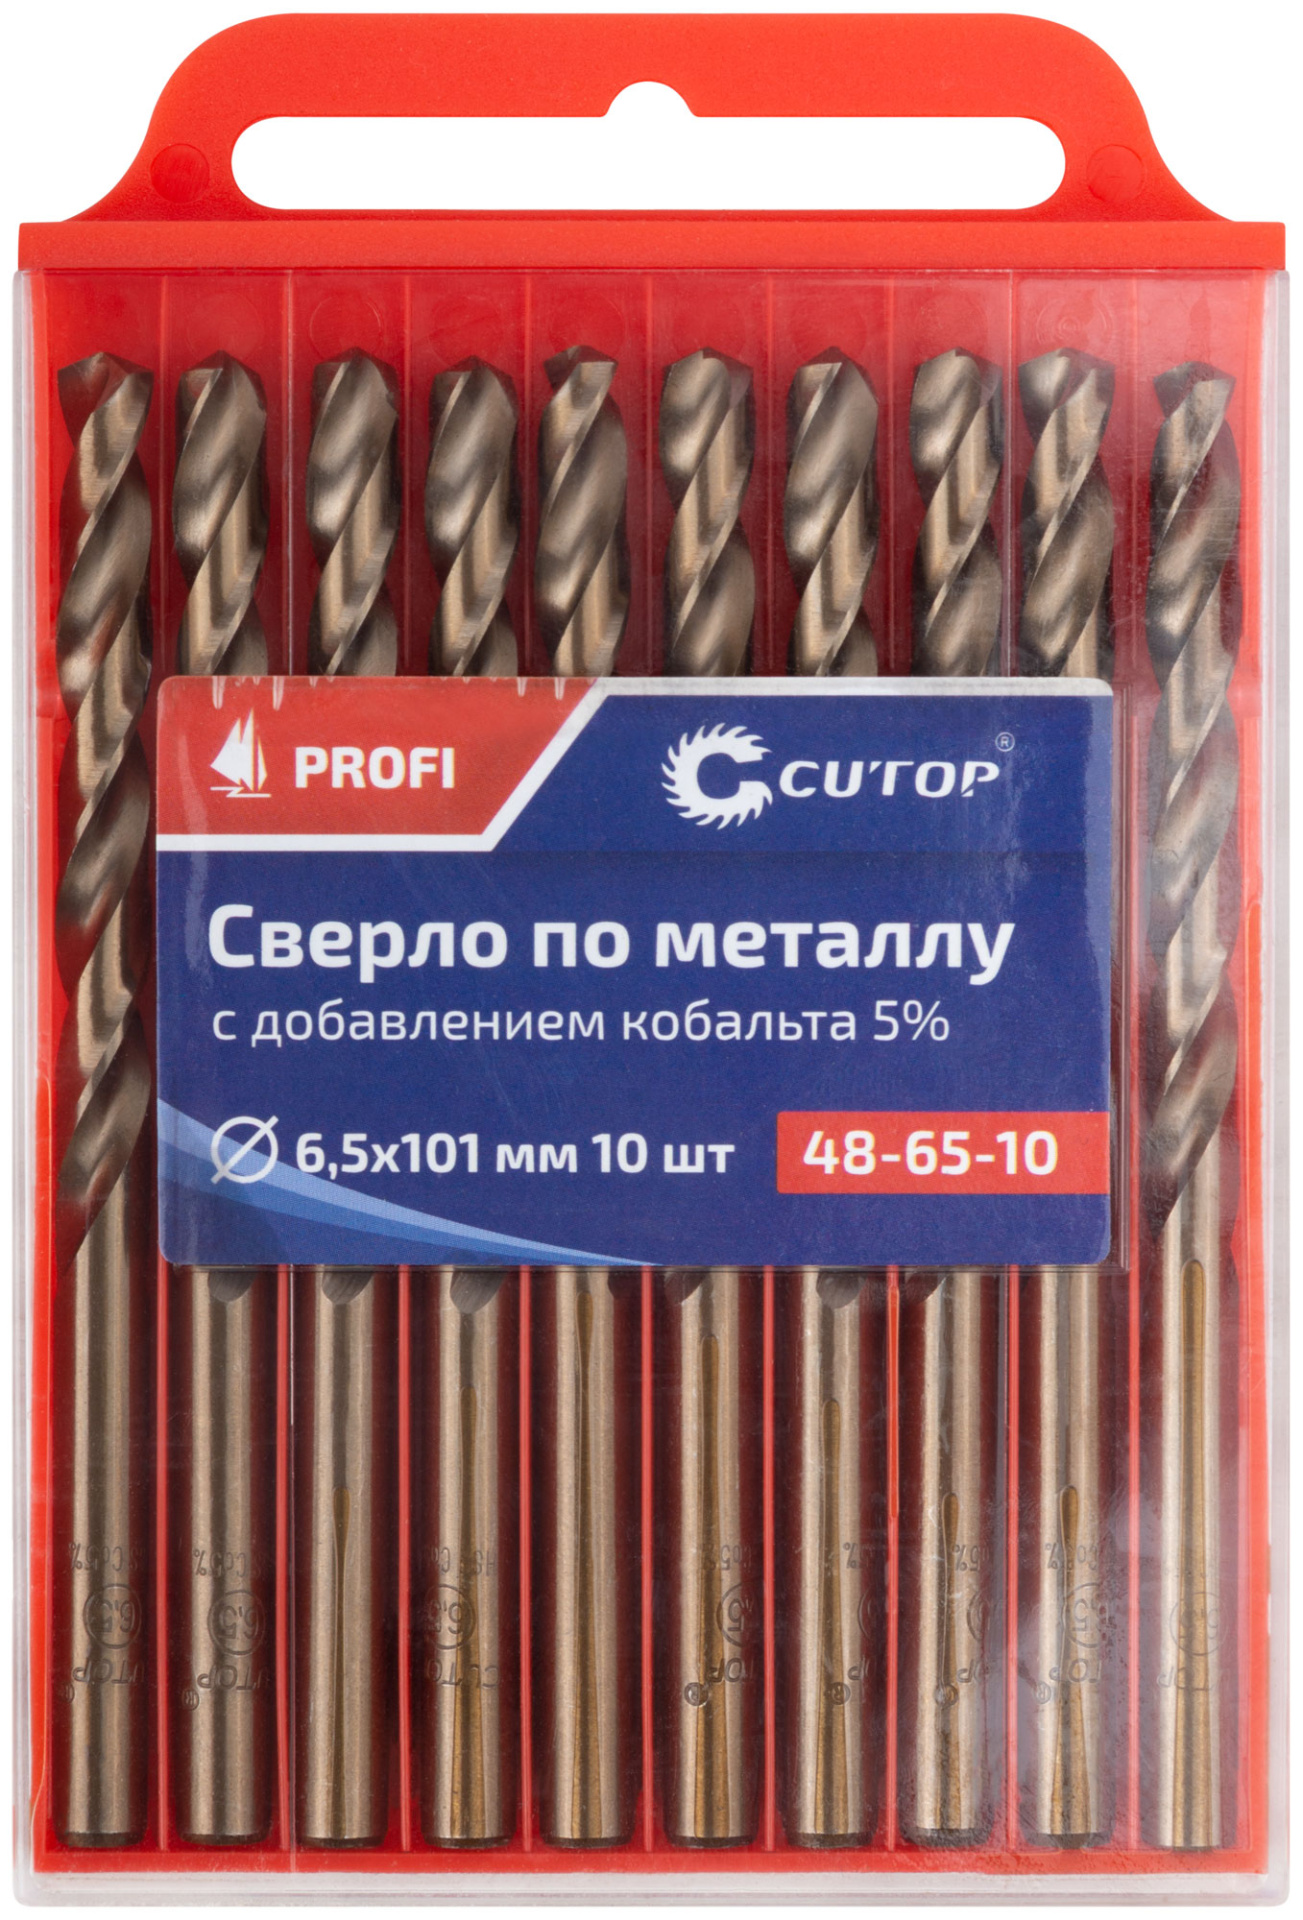 Сверло по металлу Profi с кобальтом 5%, 6,5 x 101 мм (10 шт) Cutop